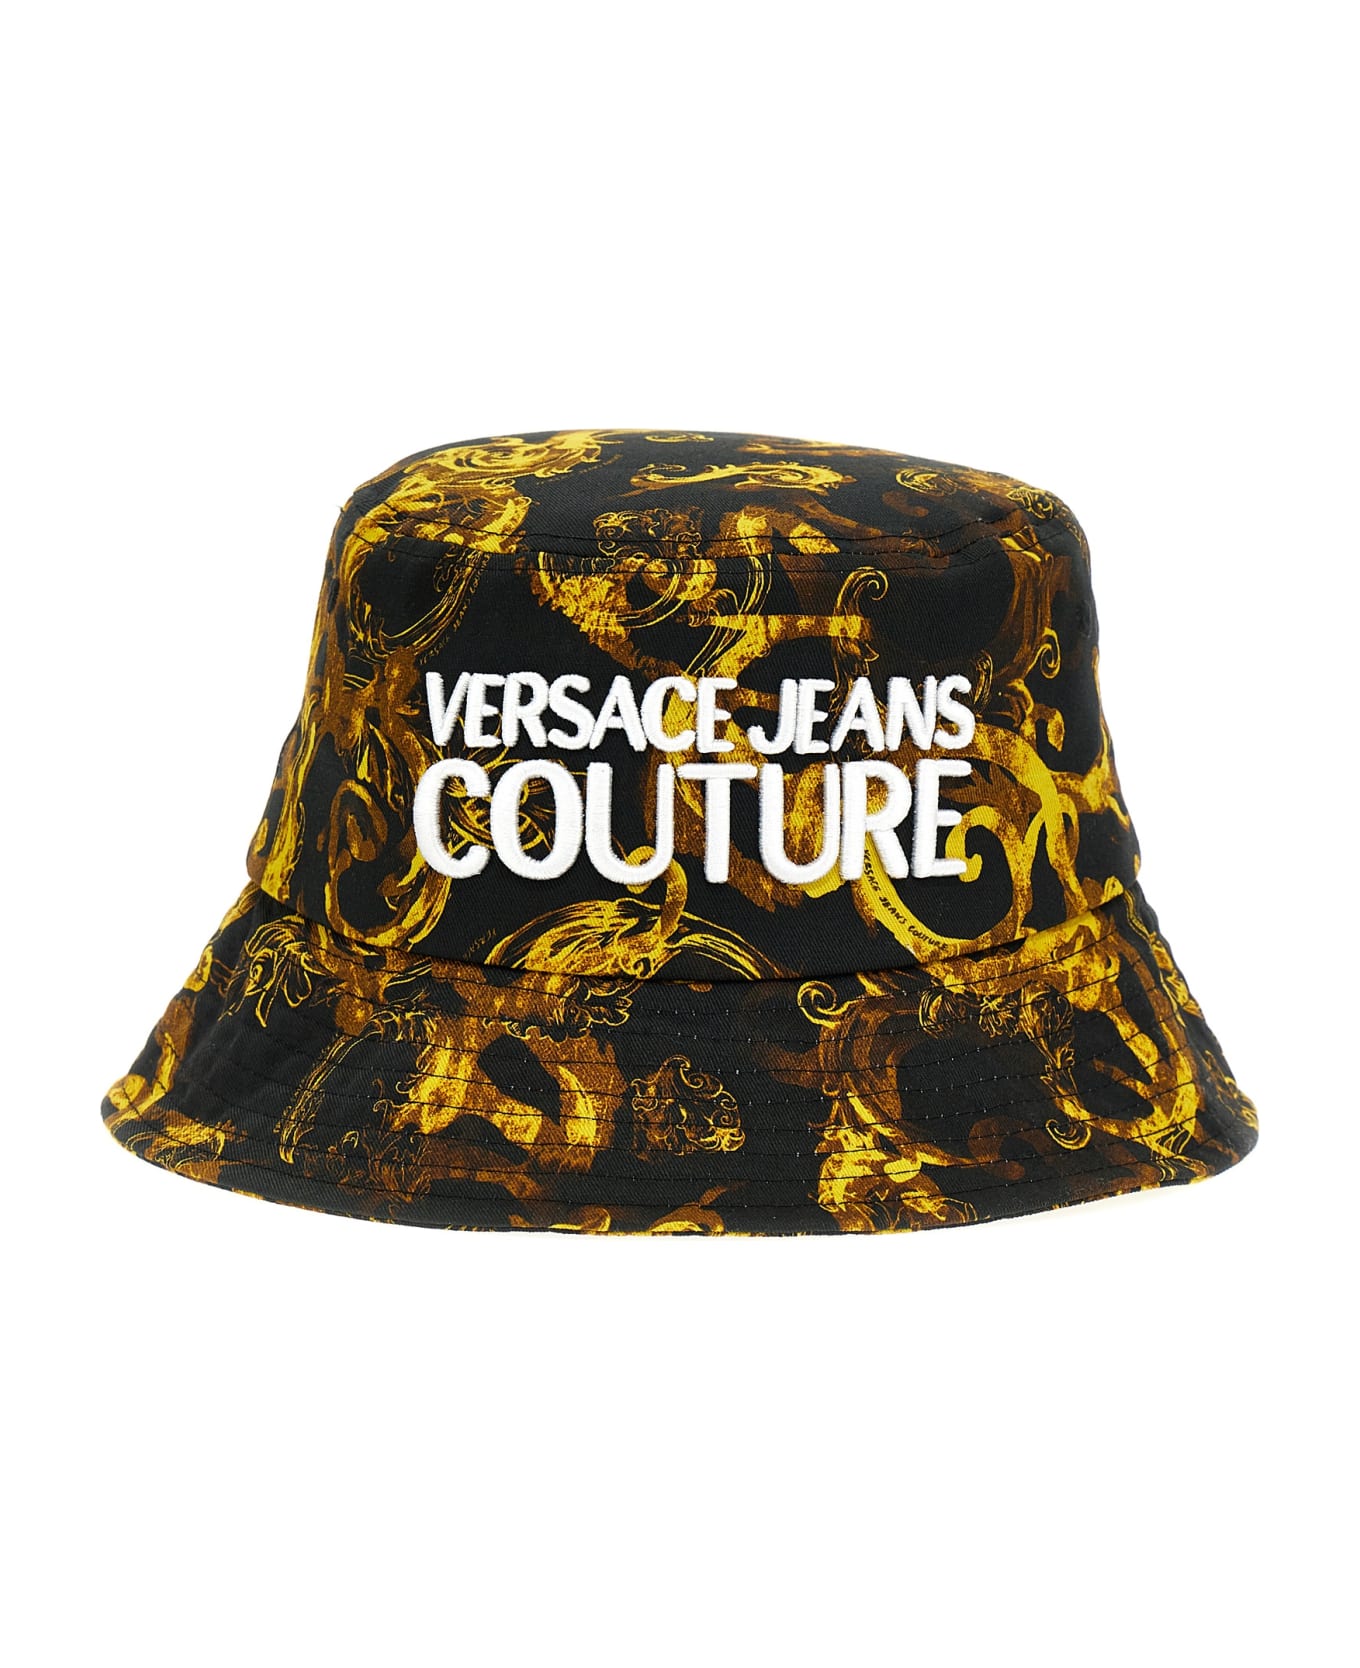 Versace Jeans Couture 'barocco' Bucket Hat - Multicolor